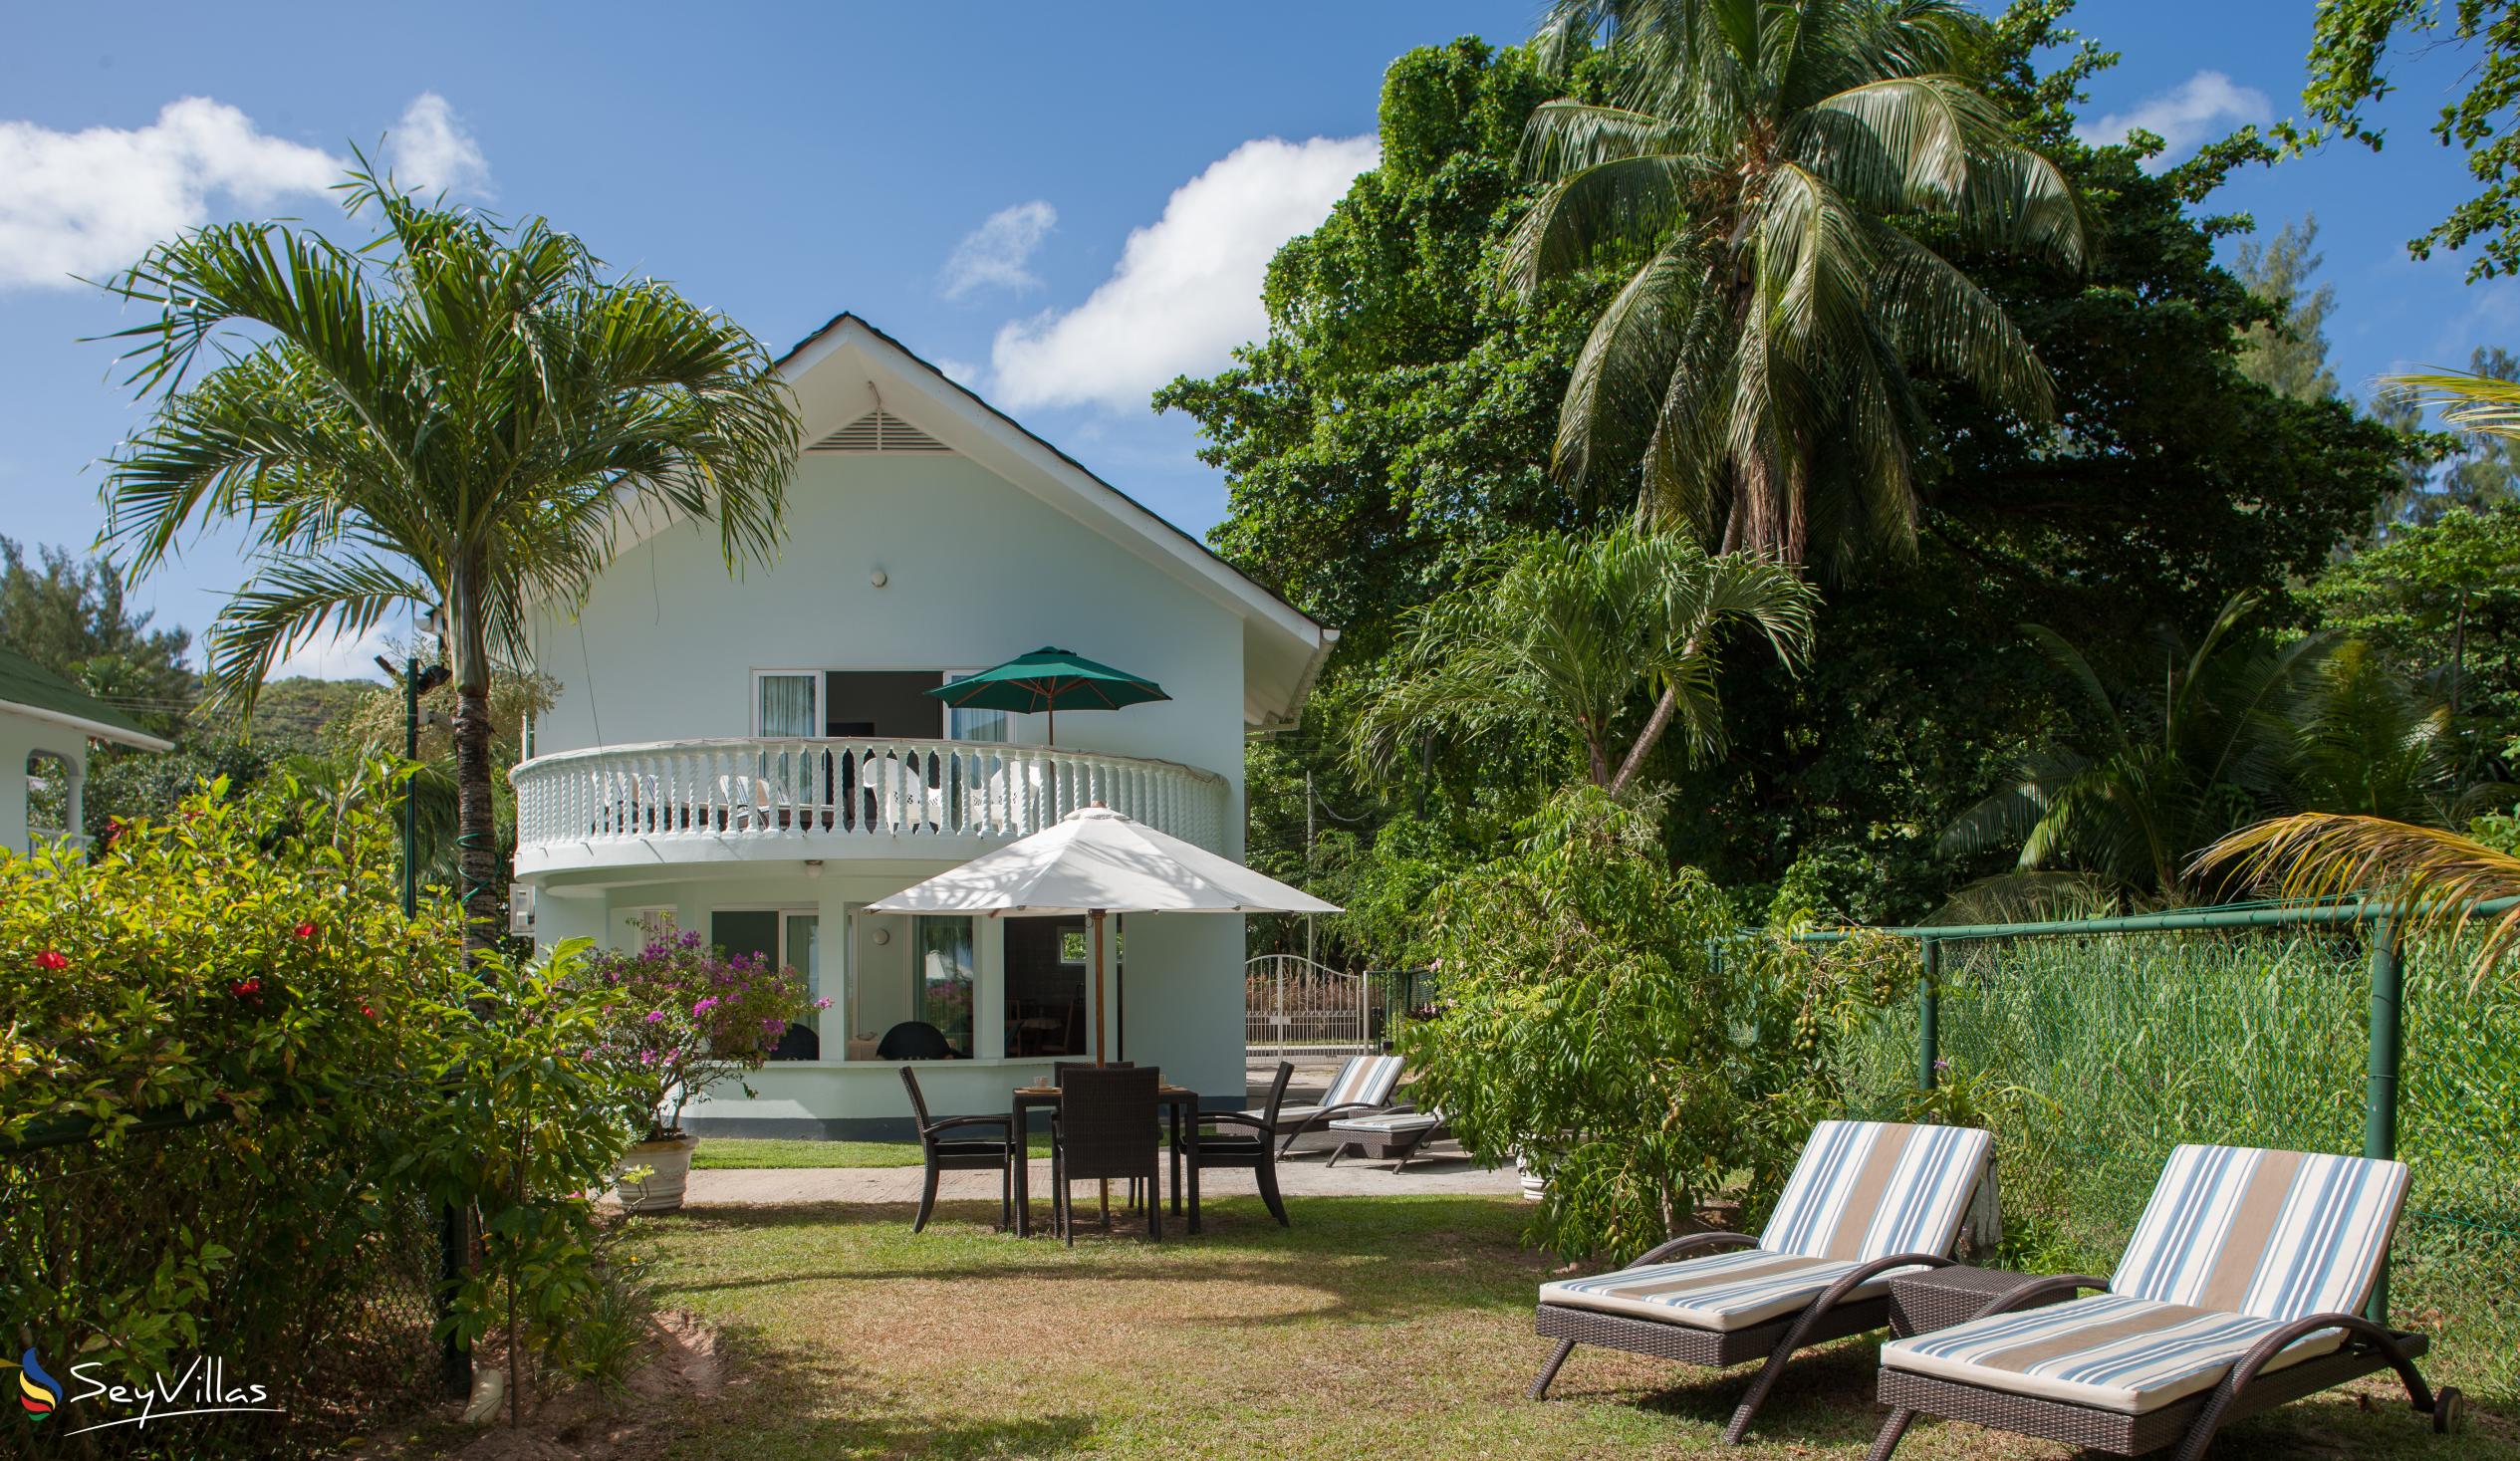 Foto 14: Ocean Villa - Aussenbereich - Praslin (Seychellen)